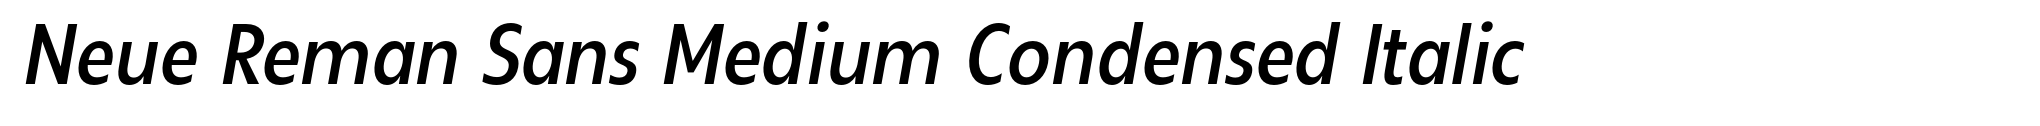 Neue Reman Sans Medium Condensed Italic image